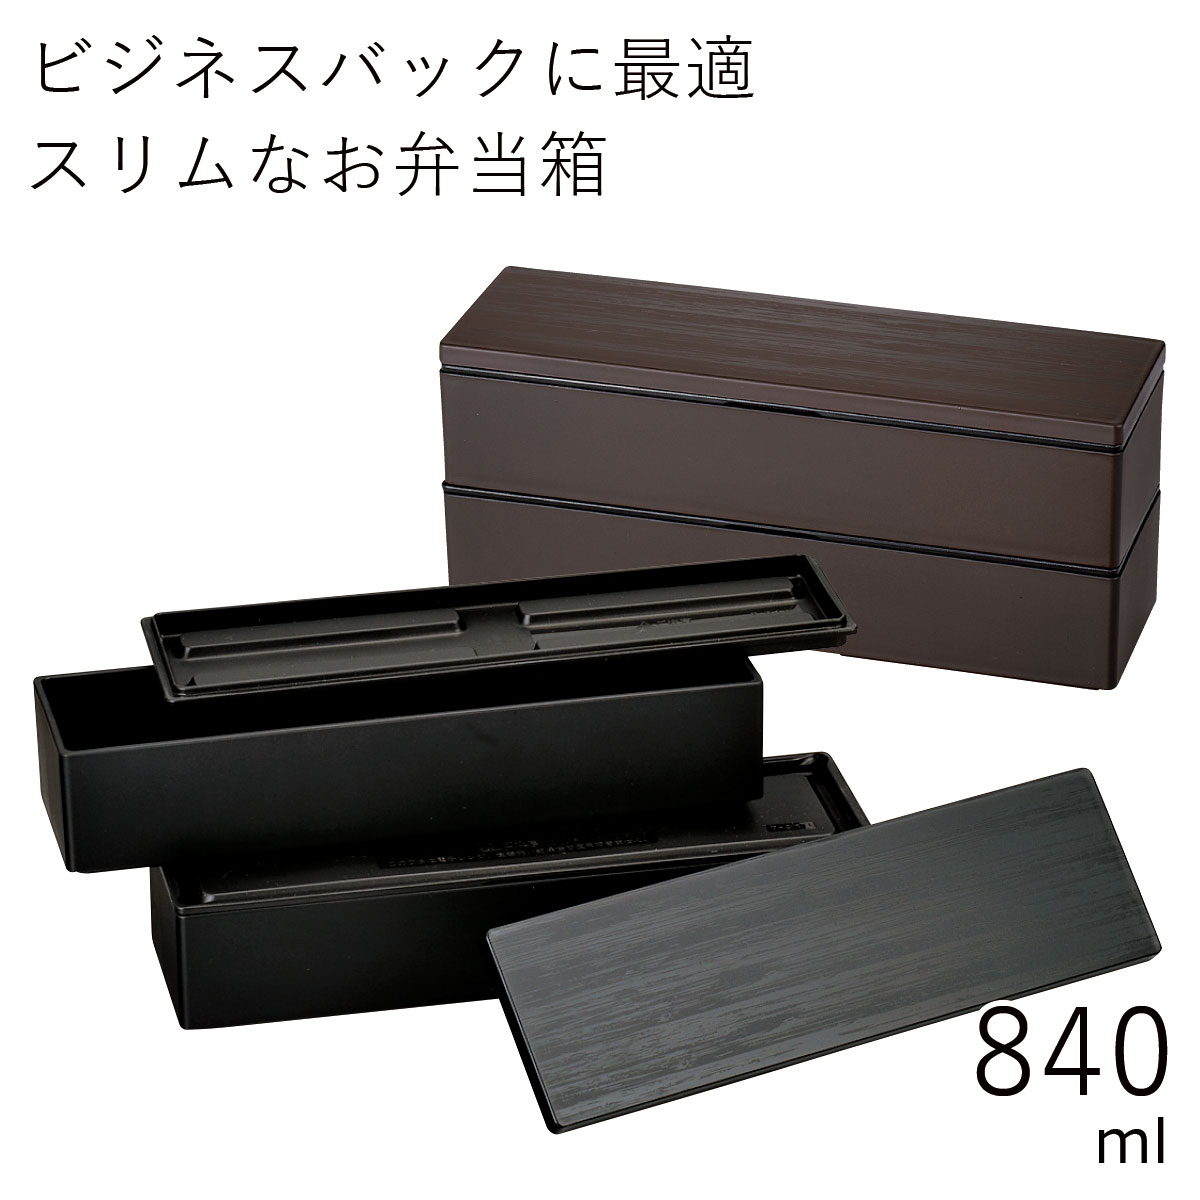 弁当箱”HAKOYA スリム二段弁当 840 WOOD STYLE 840ml”木目のクールなデザインがおしゃれ2段 スリム型電子レンジ対応 食洗器対応日本製 LUNCH BOX